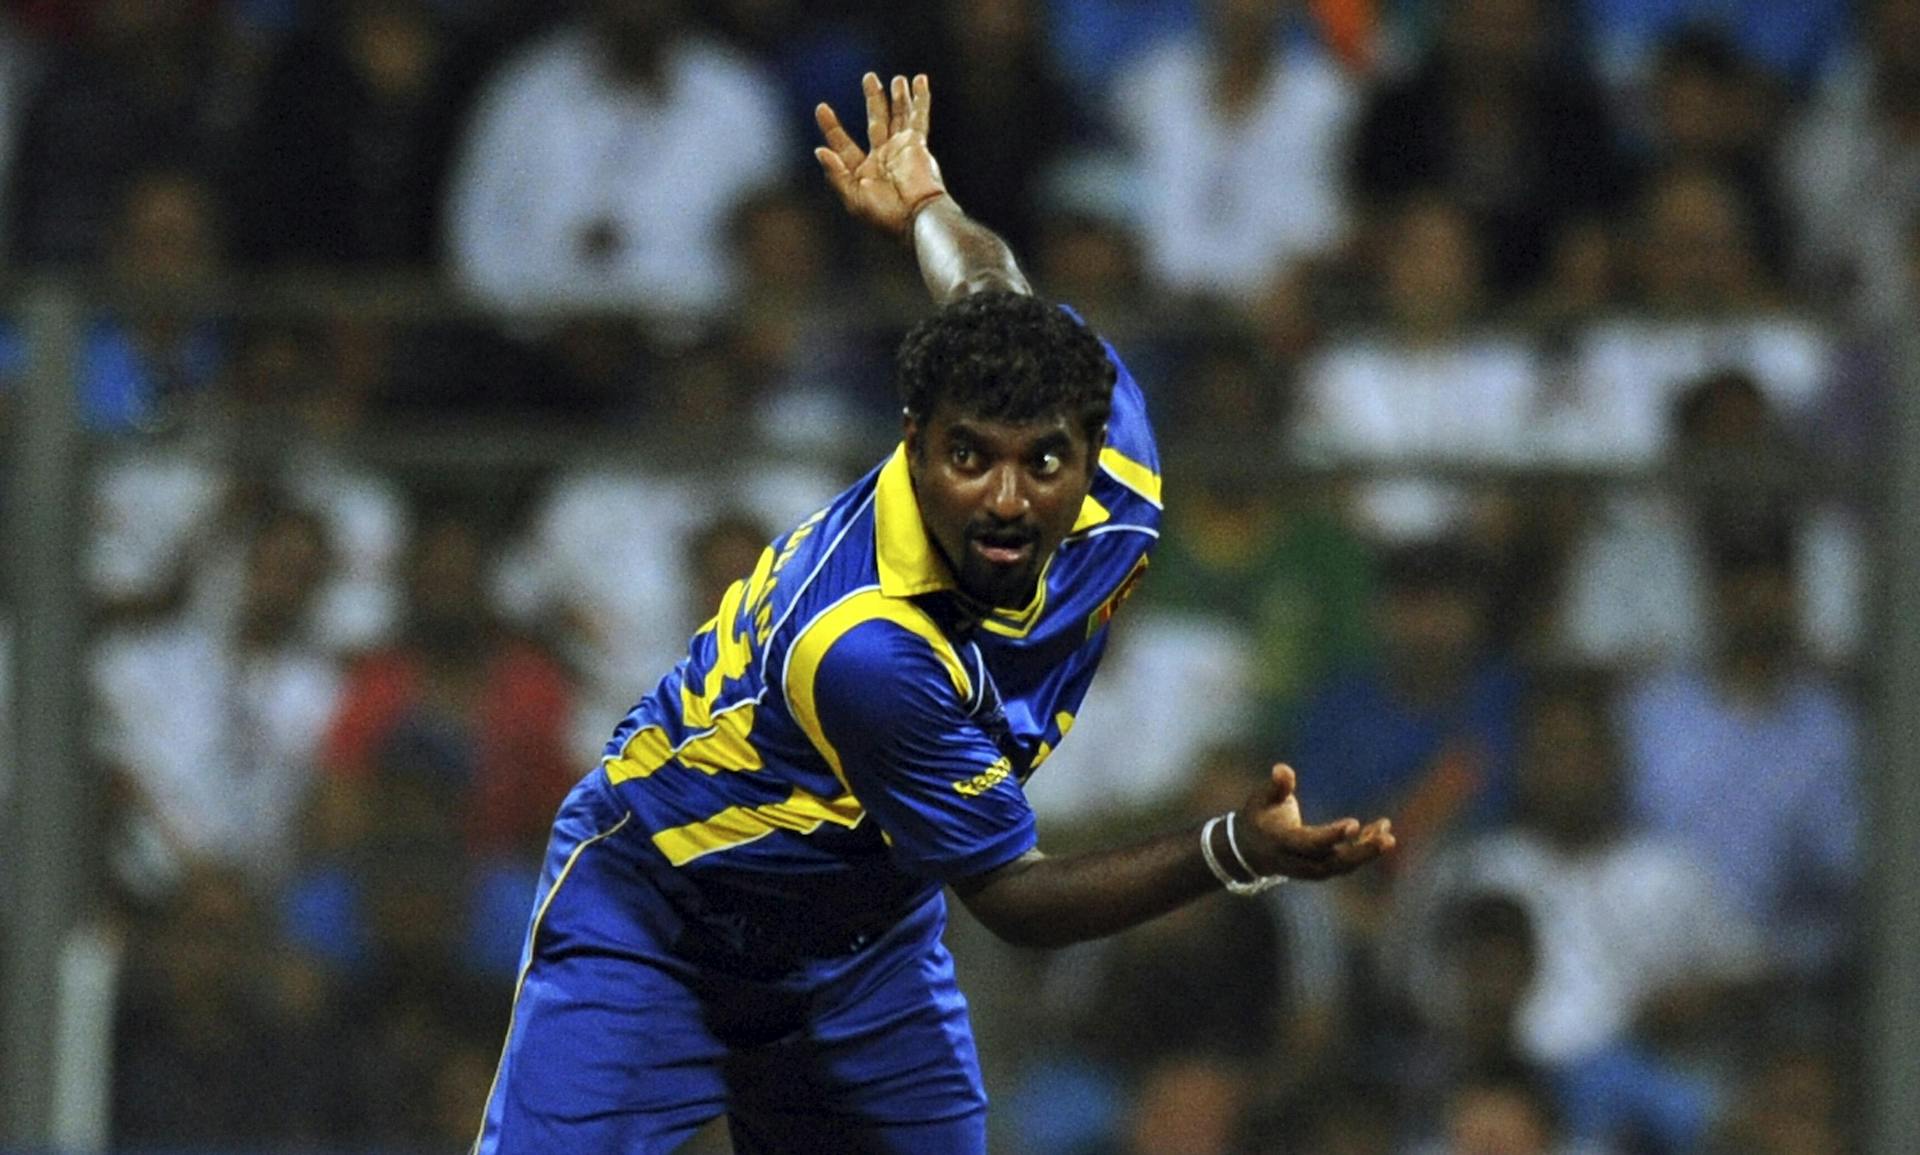 Muttiah Muralitharan ODI Bowling for Sri Lanka.jpeg